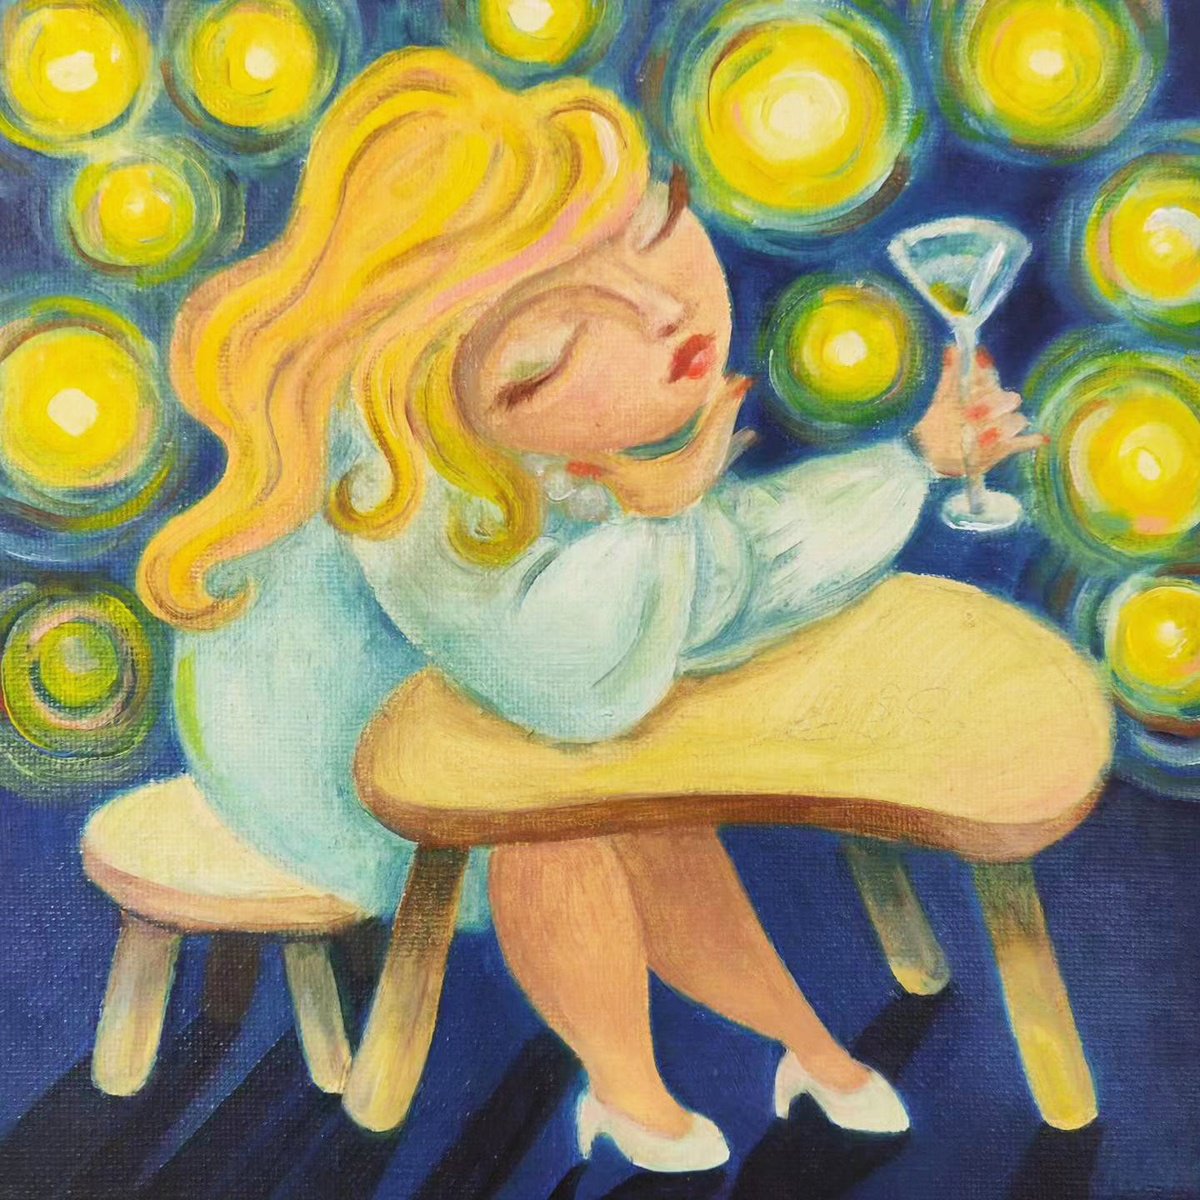 Glass Of Martini by Vio Valova